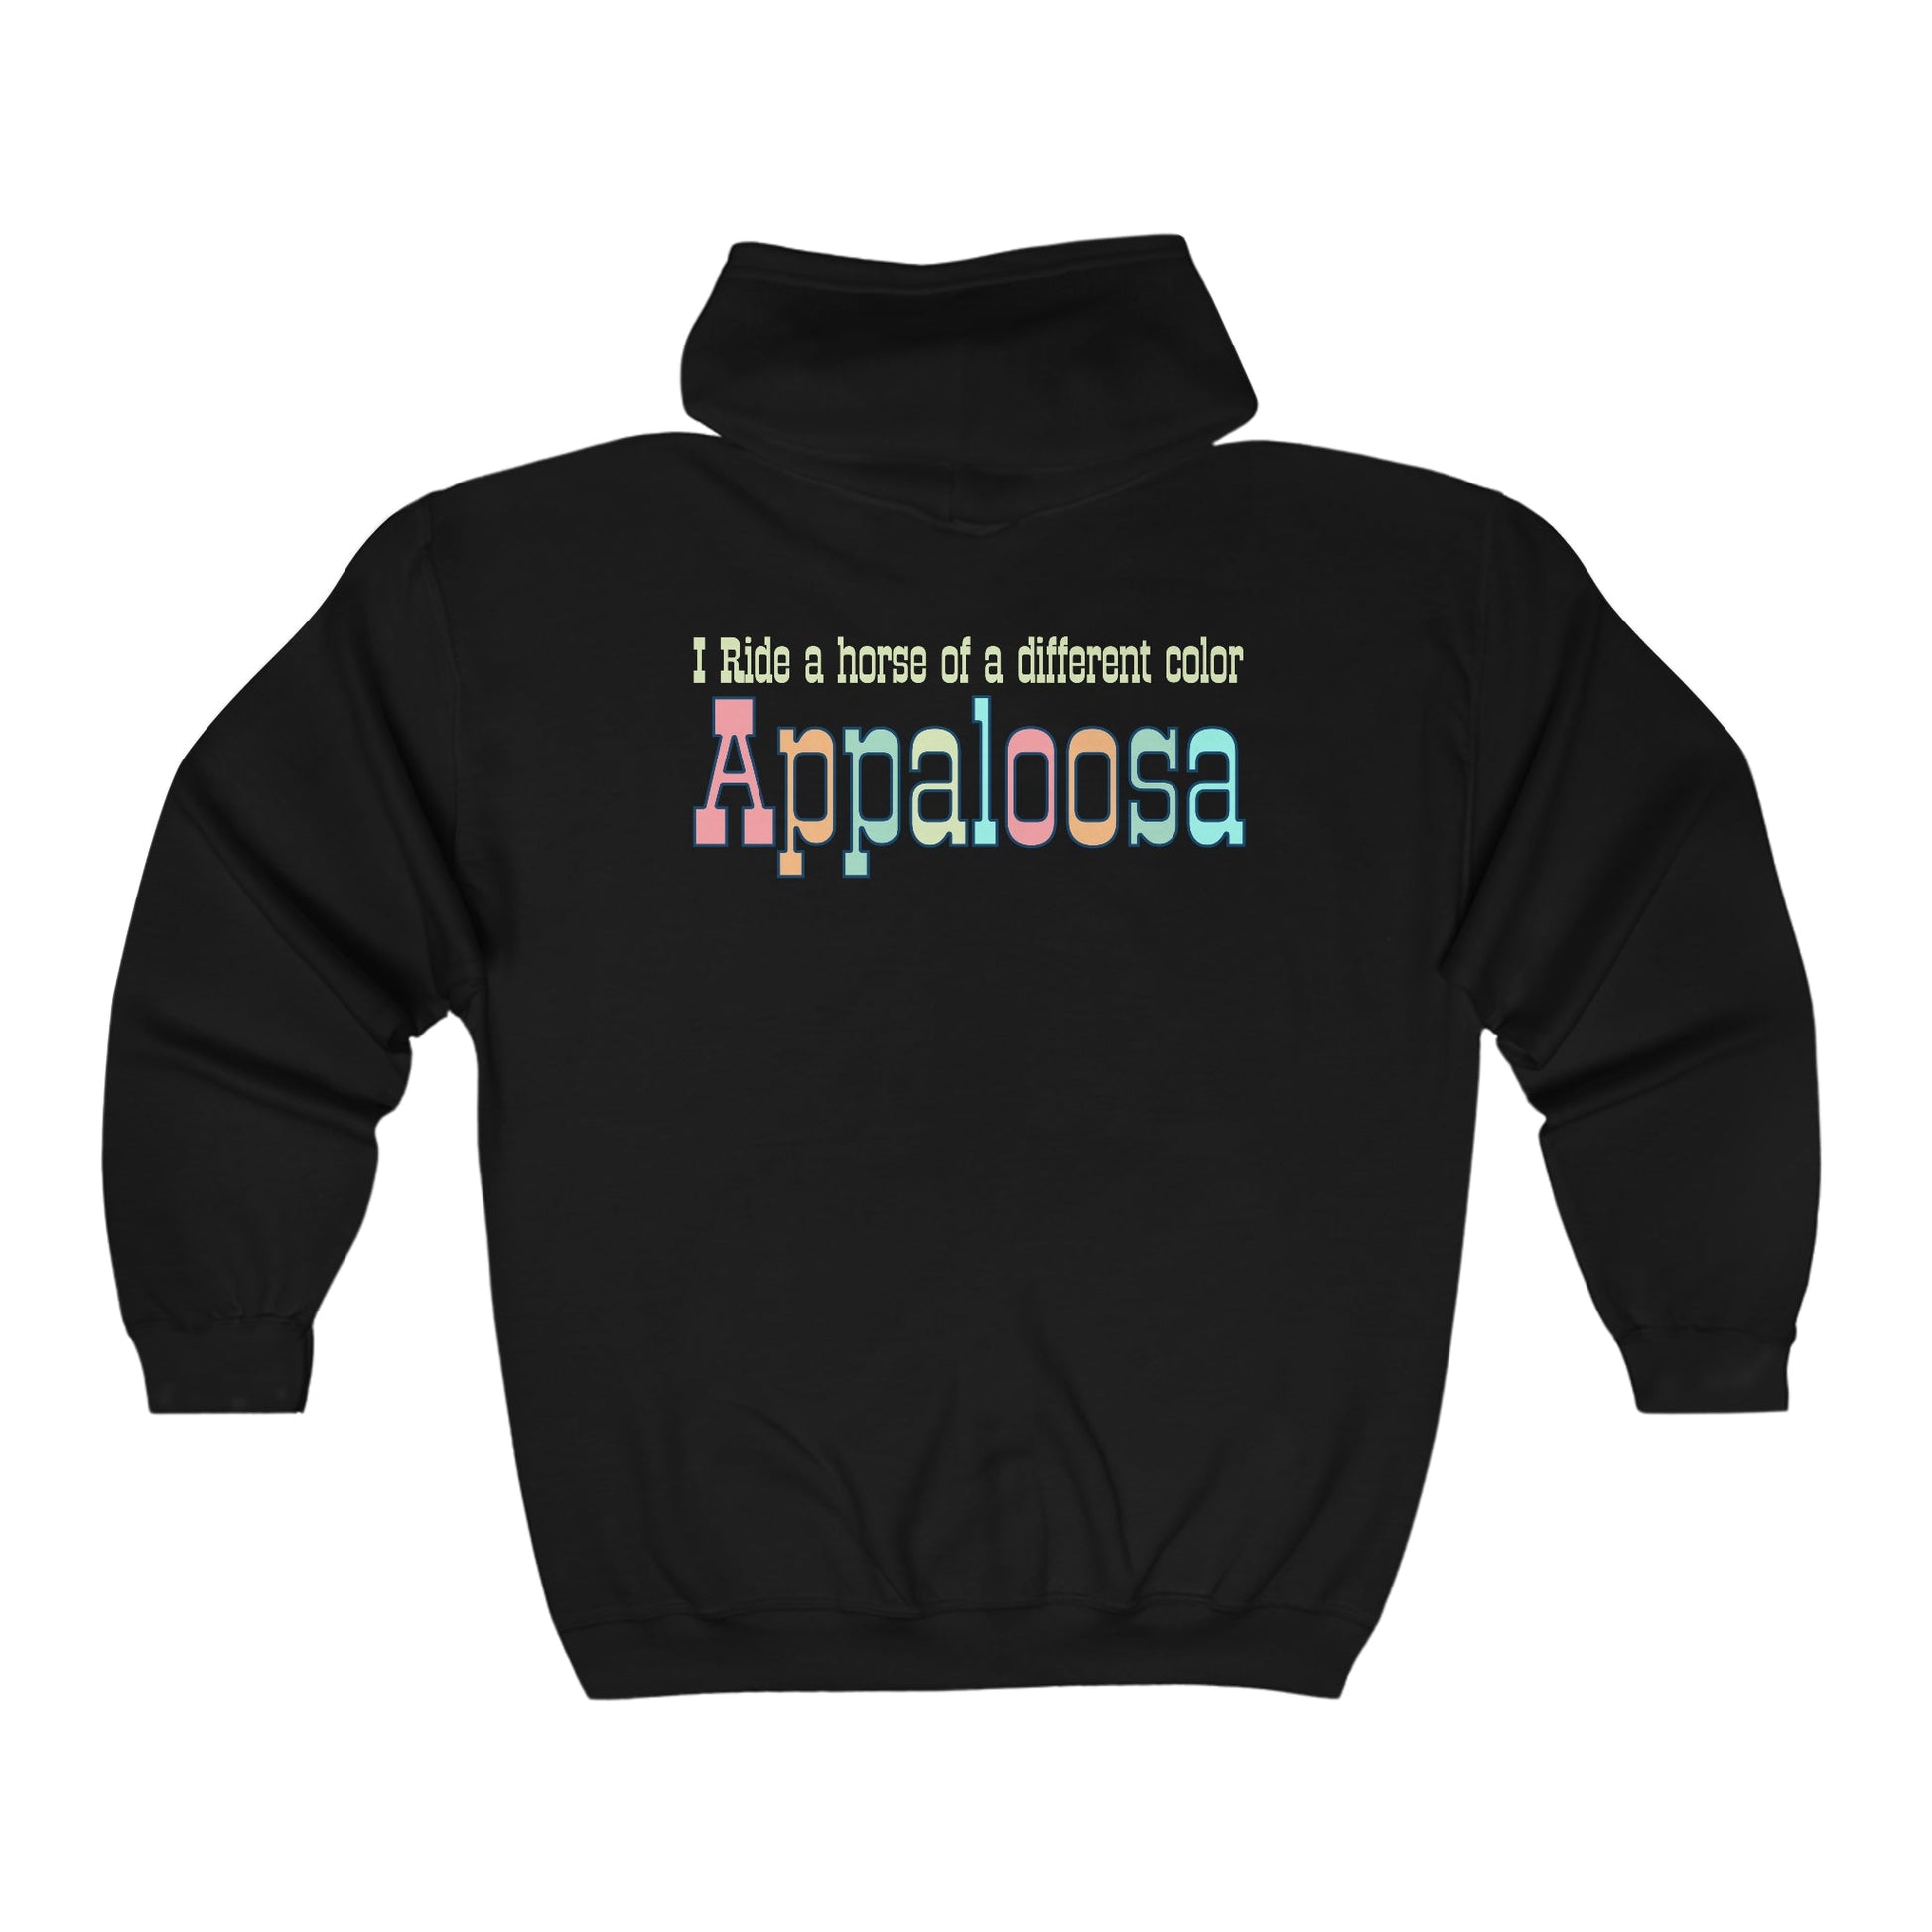 Appaloosa Horse Full Zip Jacket Hoodie Two Side Print, Sweatshirt - FlooredByArt